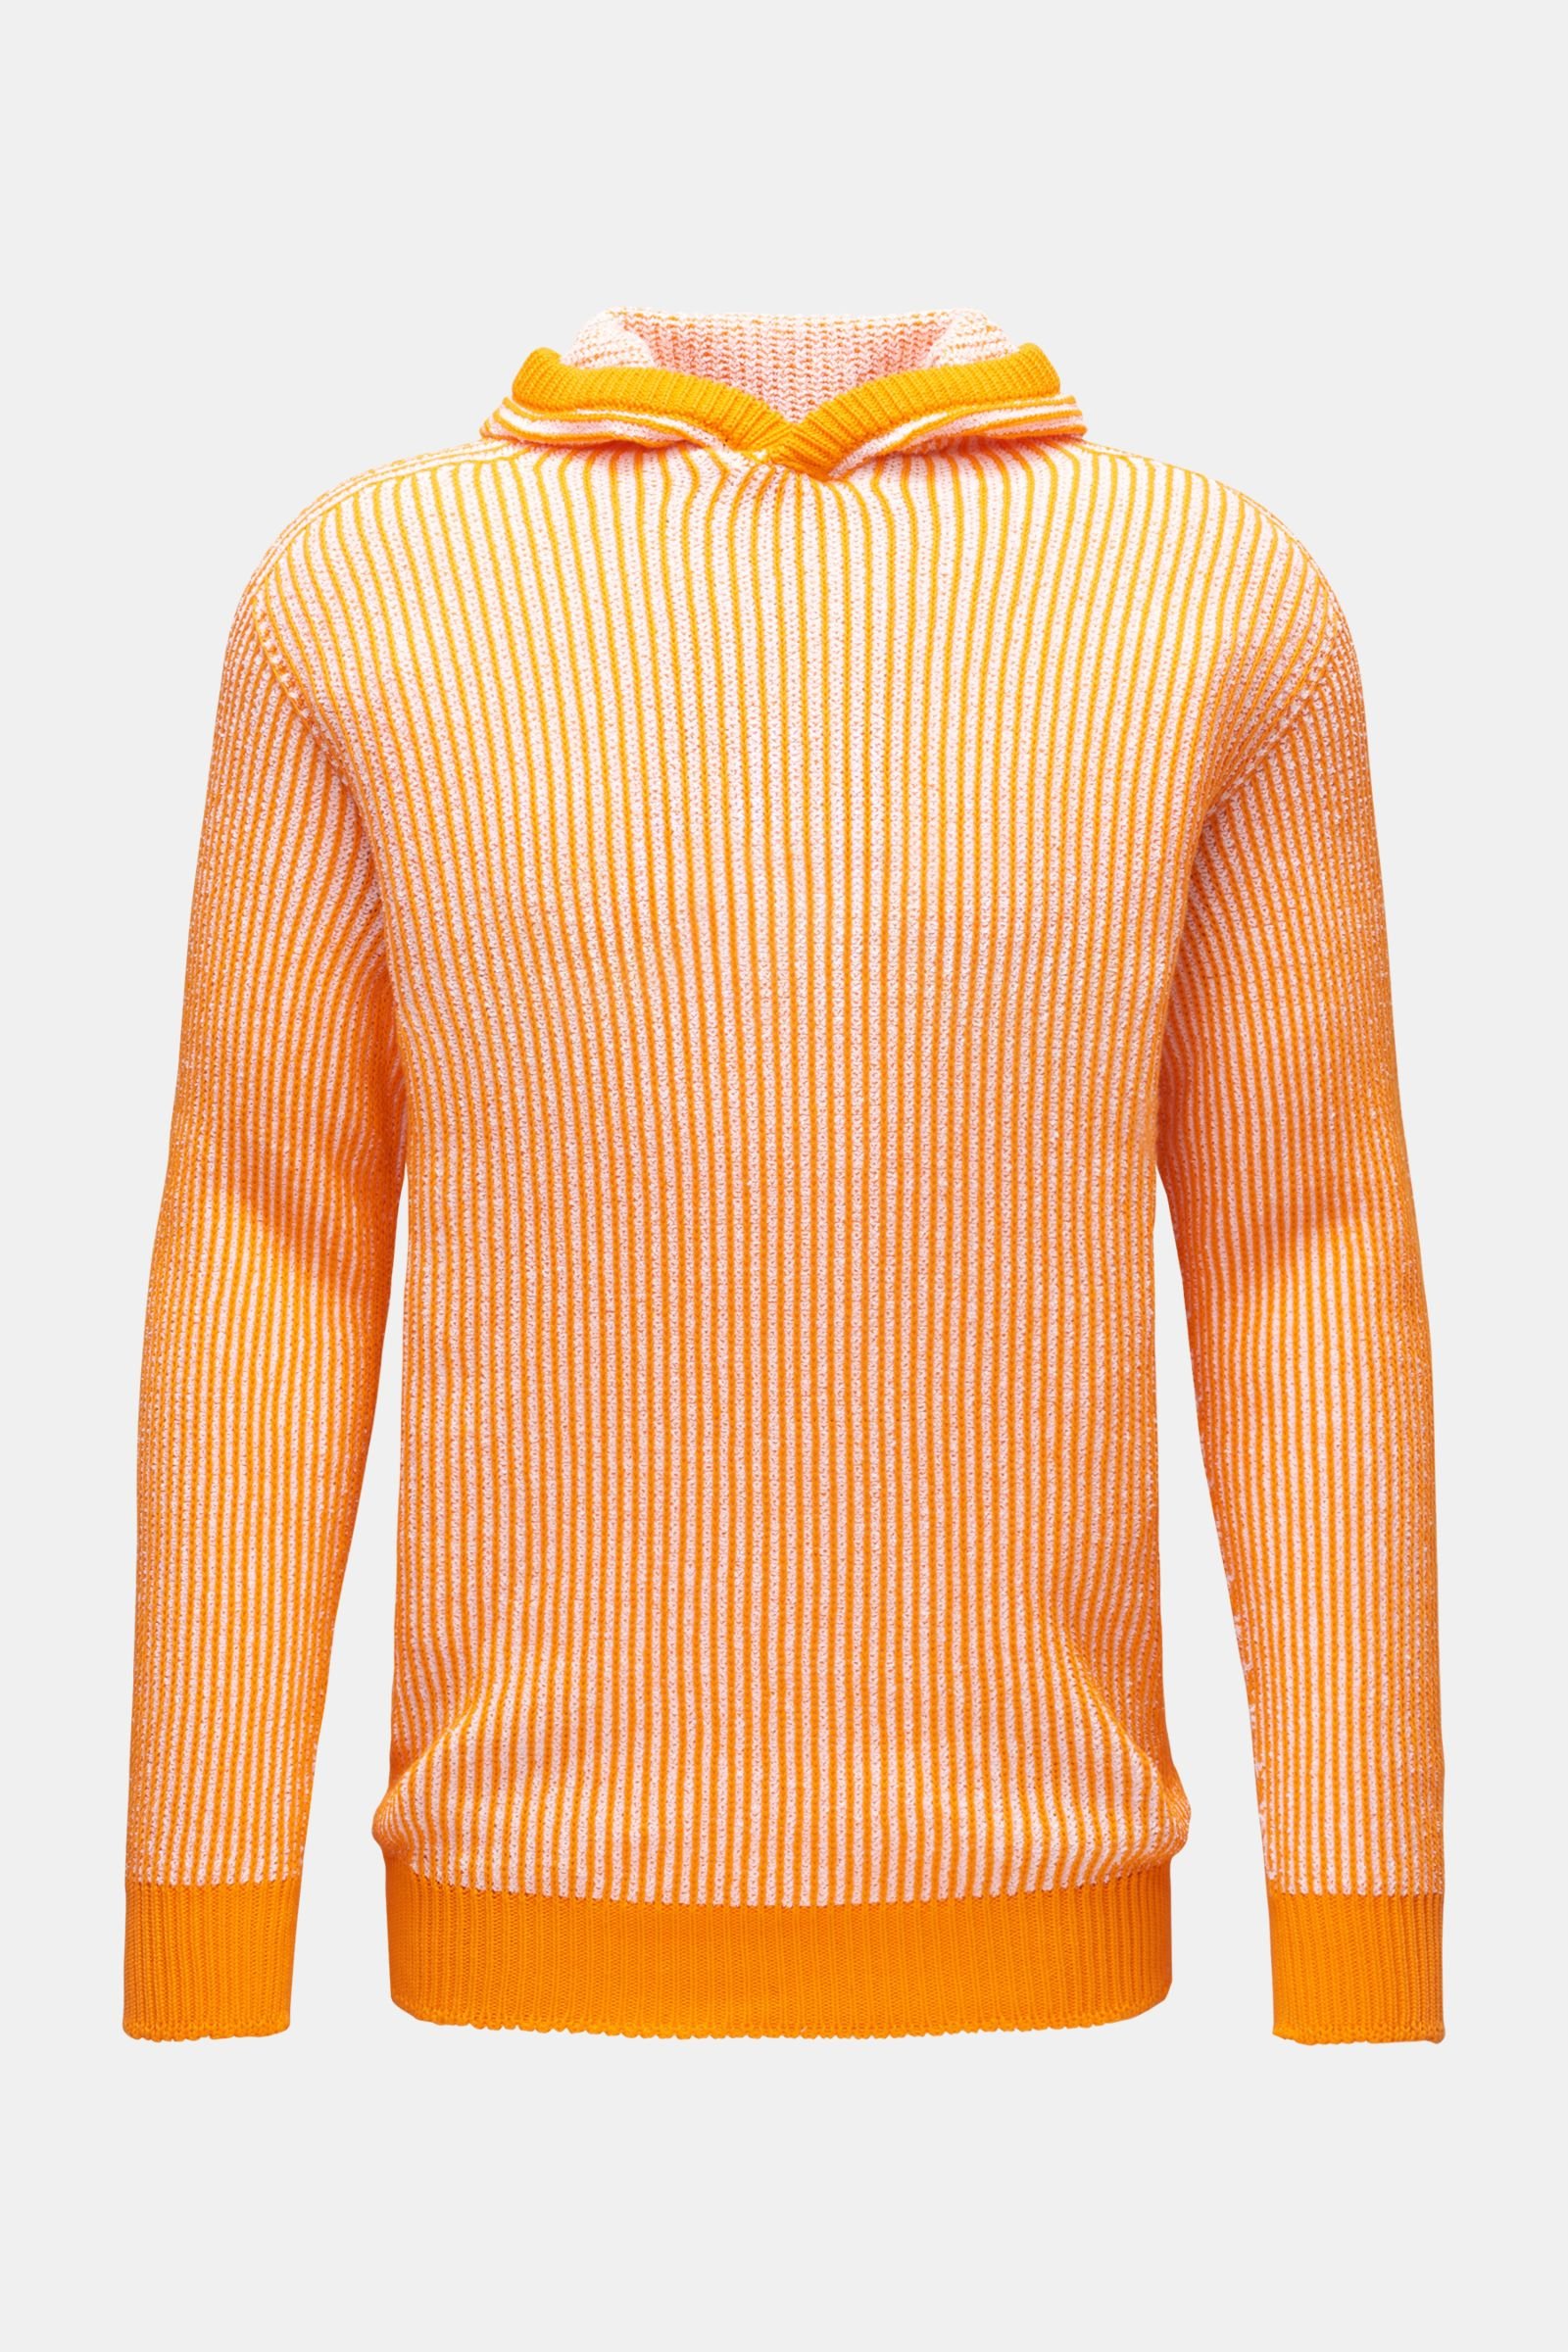 Reversible hooded jumper 'Reversible' orange